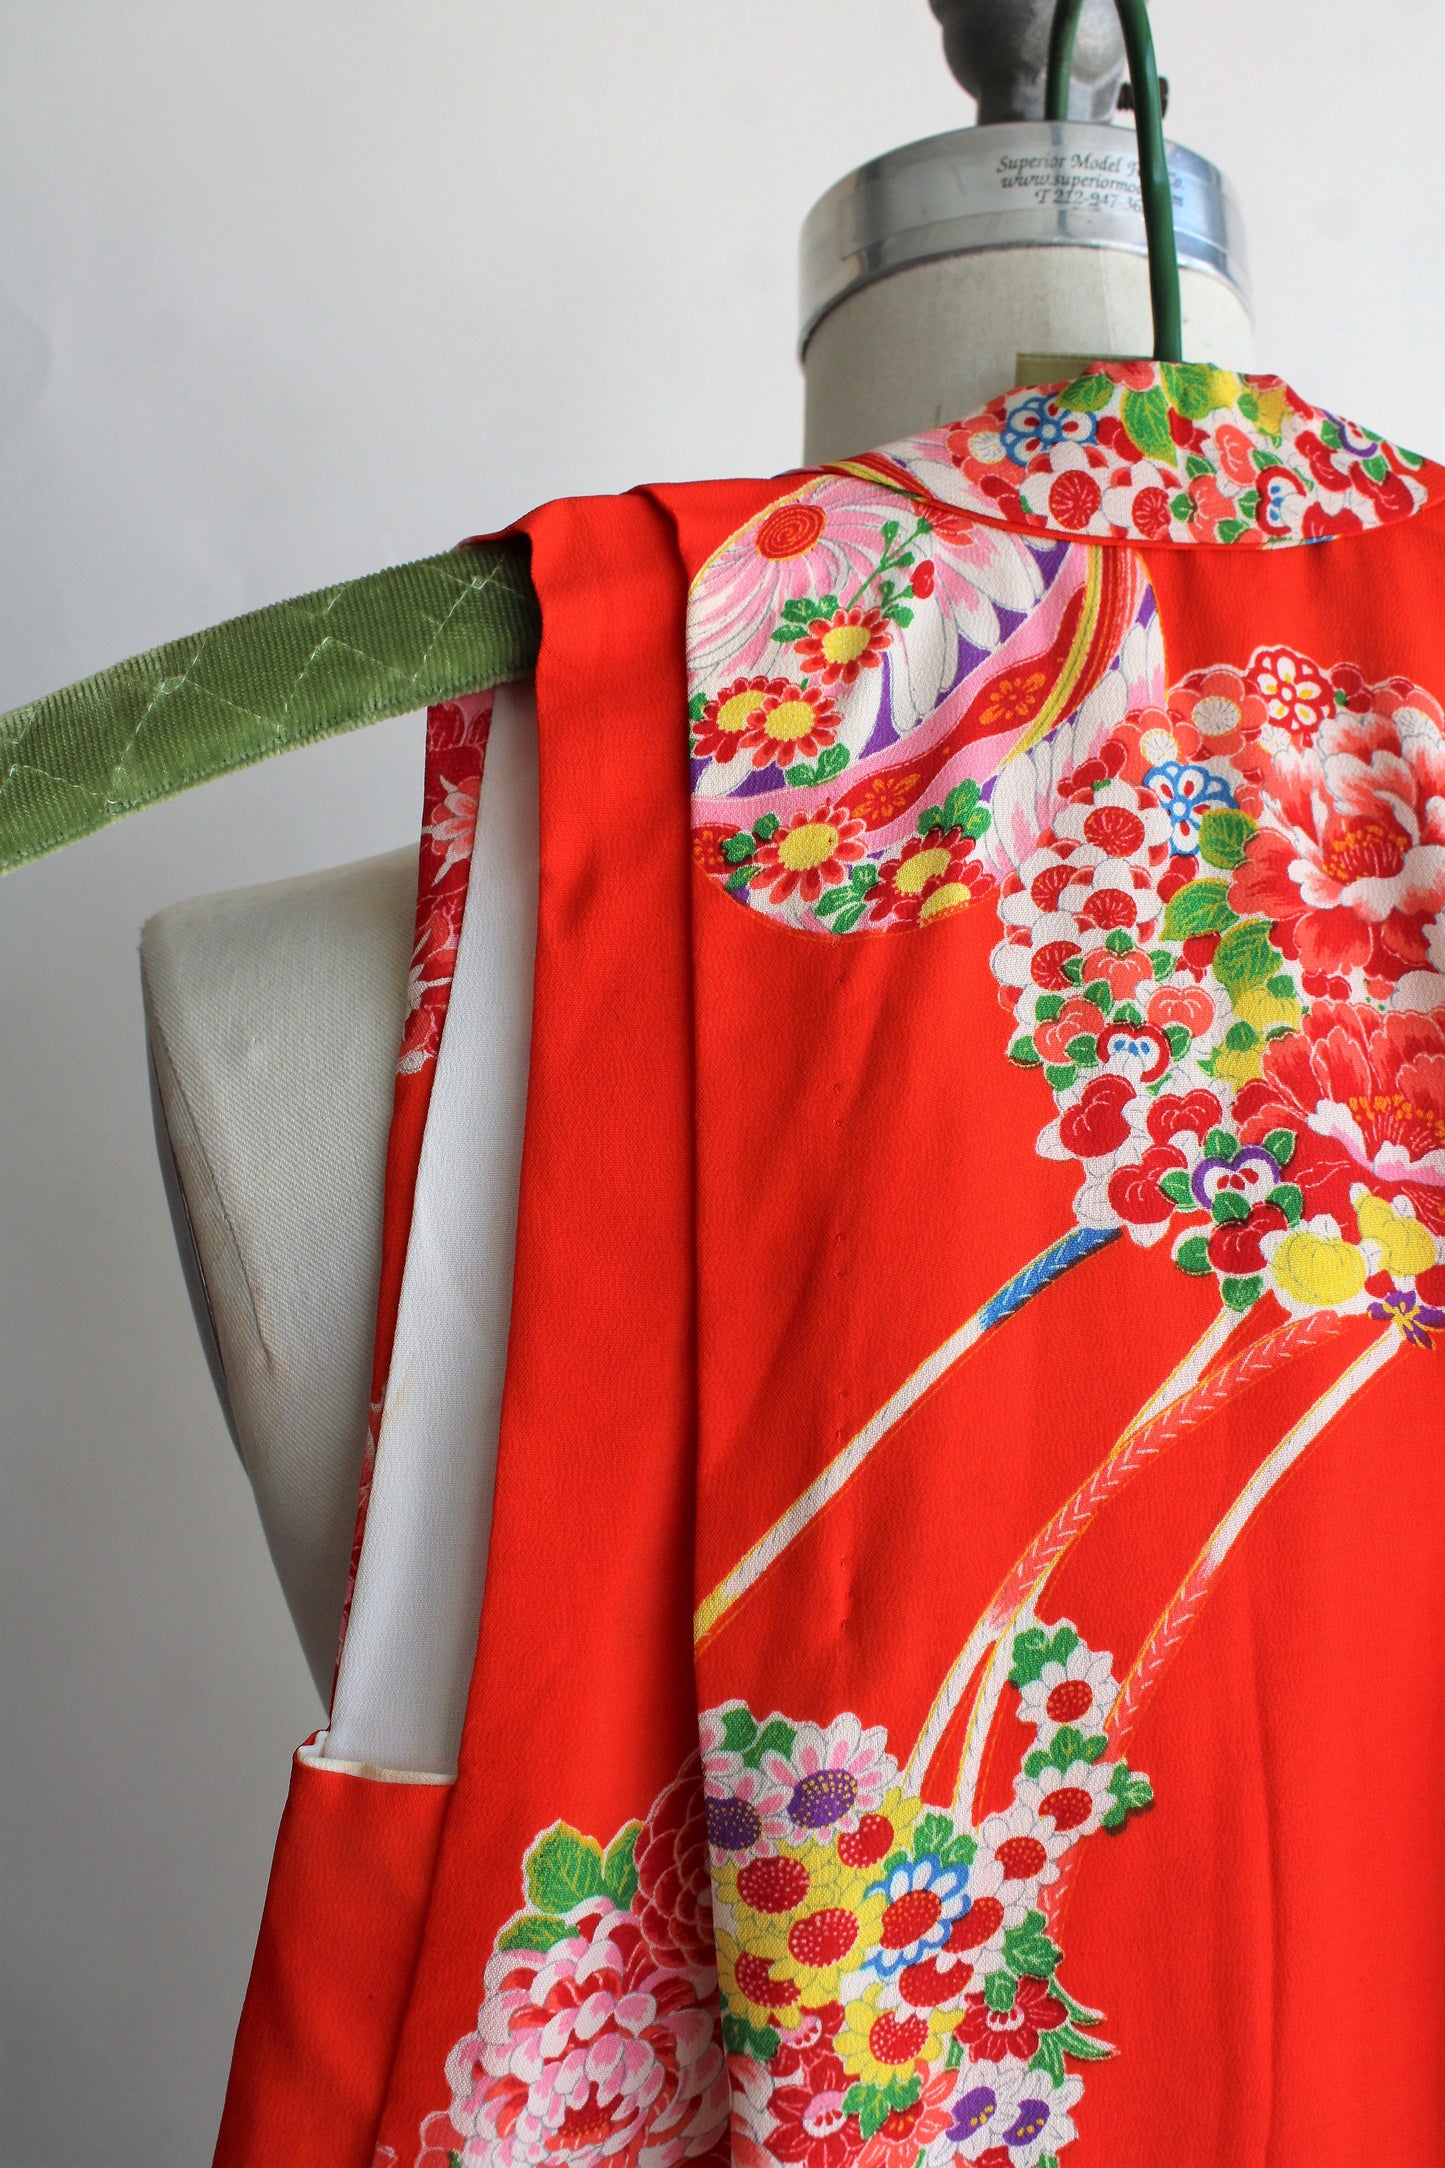 Vintage 1960s Japanese Red Floral Print Vest Top